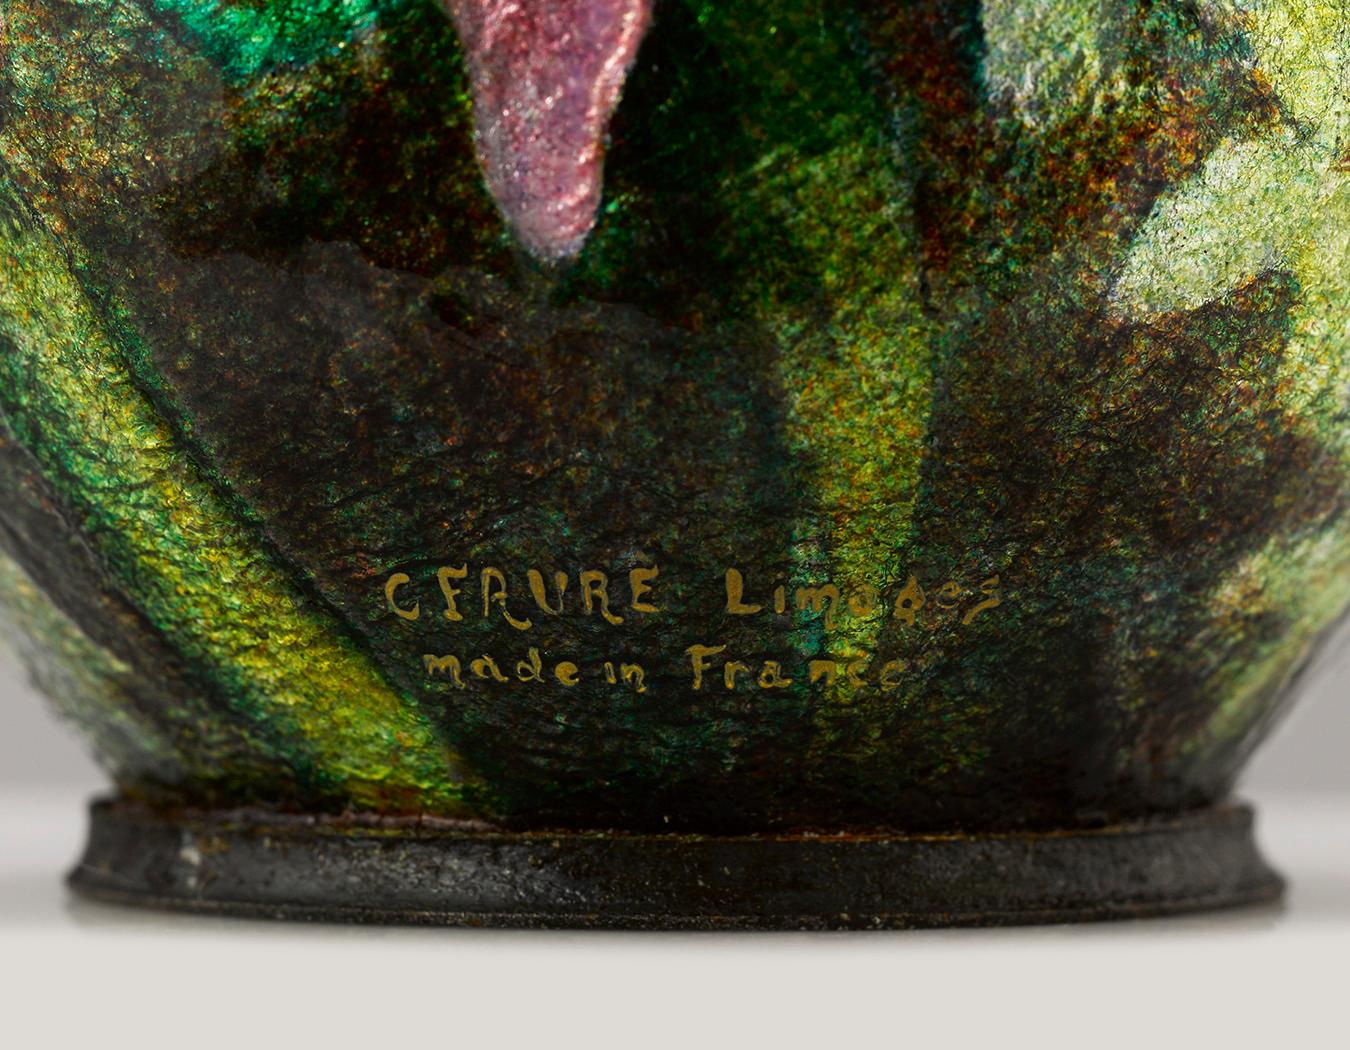 De délicates fleurs roses semblent jaillir de ce rare vase émaillé de Limoges par Camille Fauré. Des couches successives d'émail aux couleurs vives et aux lignes gravées par des experts ont été appliquées sur un vase en cuivre pour créer le motif en